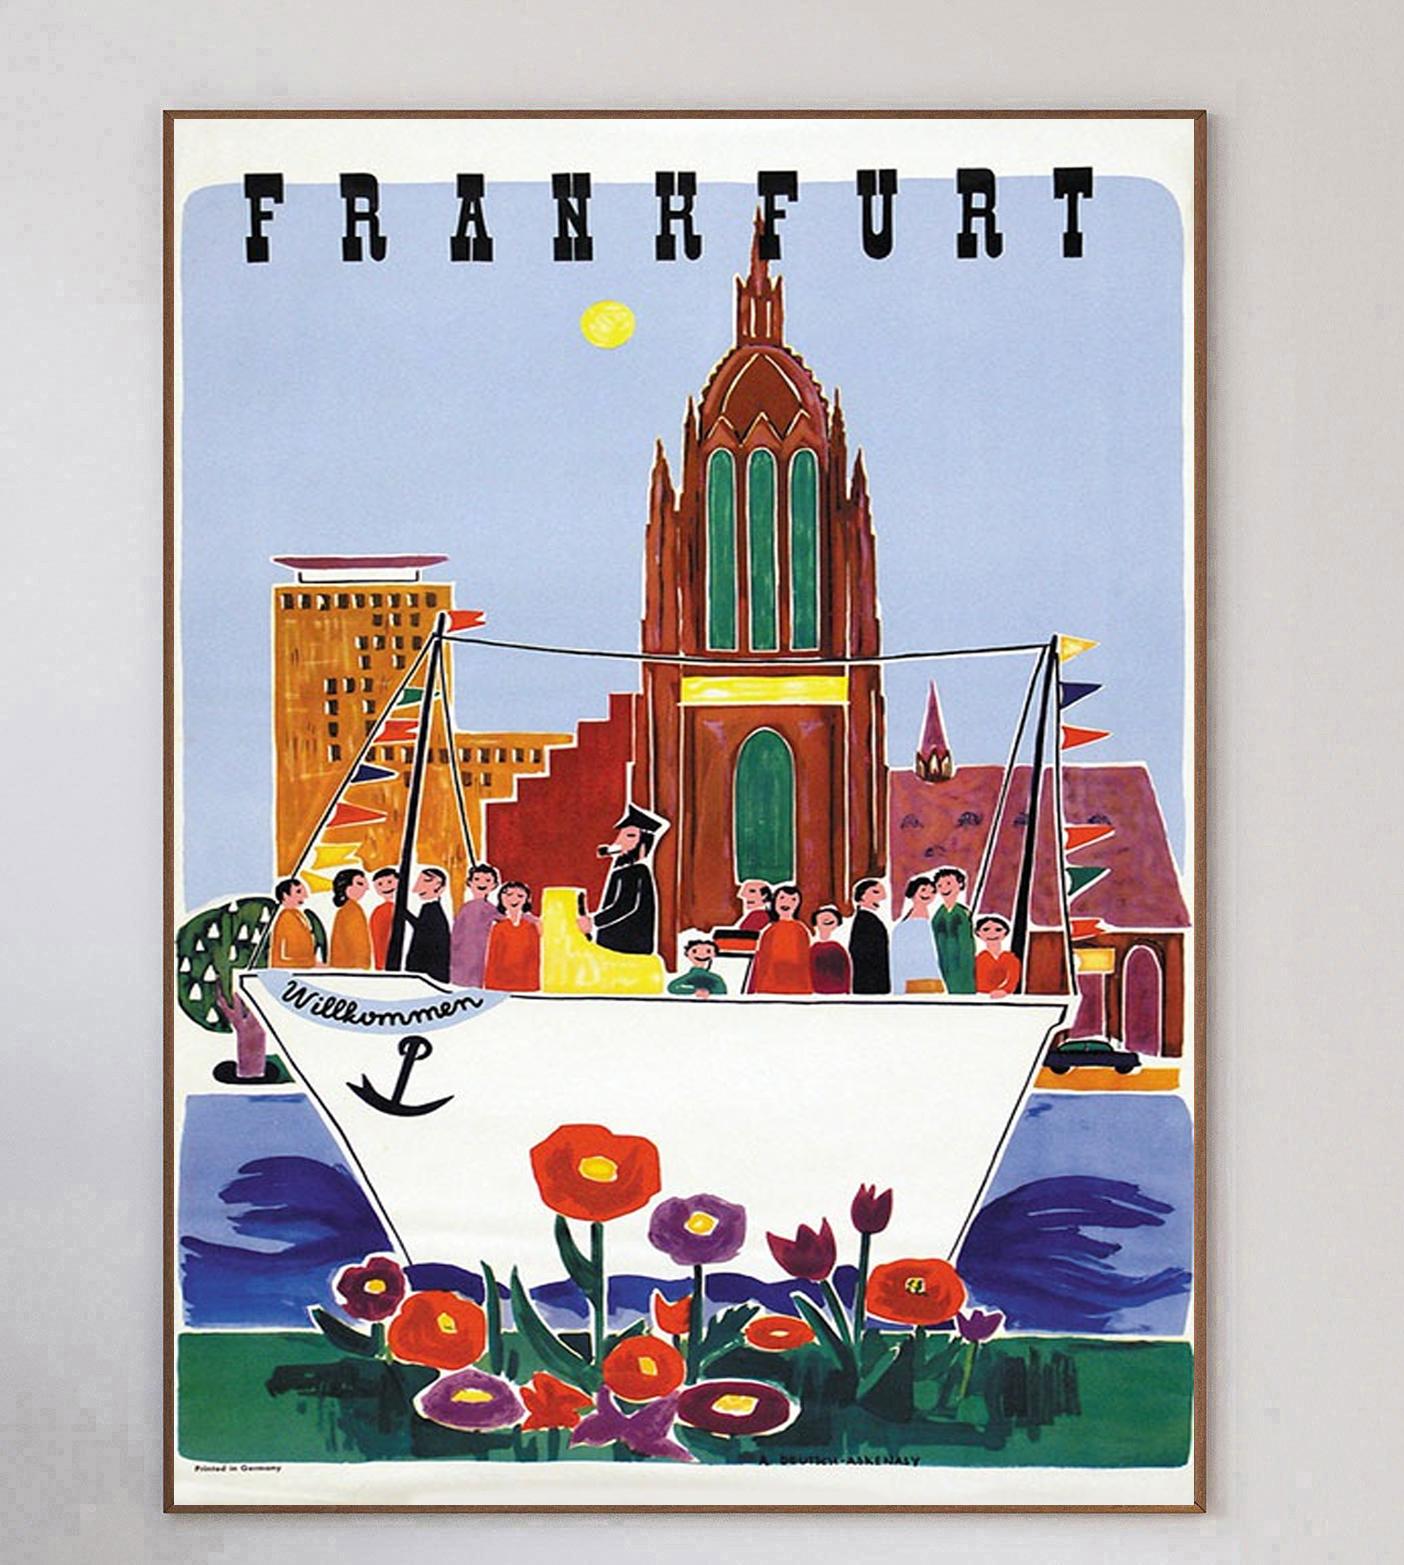 Wunderbar charmantes Plakat, das die deutsche Stadt Frankfurt für den Tourismus bewirbt. Das 1951 vom Fremdenverkehrsamt der Region geschaffene Bild zeigt eine Gruppe von Touristen, die eine Bootsfahrt auf dem Fluss genießen und die Wahrzeichen der